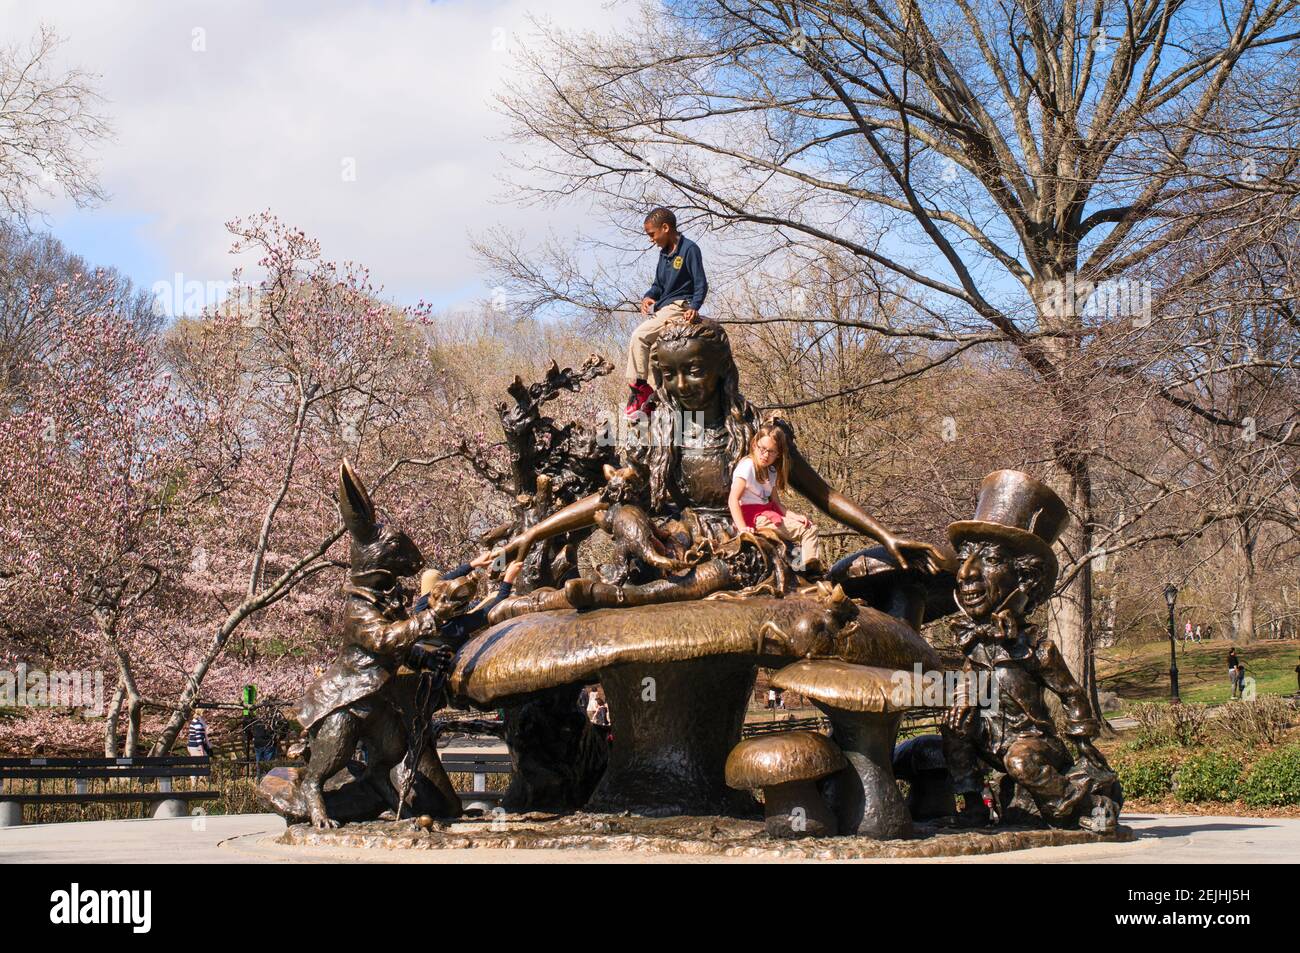 Niños jugando en la escultura de bronce Alice in Wonderland de José de Creeft en Central Park, Nueva York, Nueva York, Estados Unidos Foto de stock